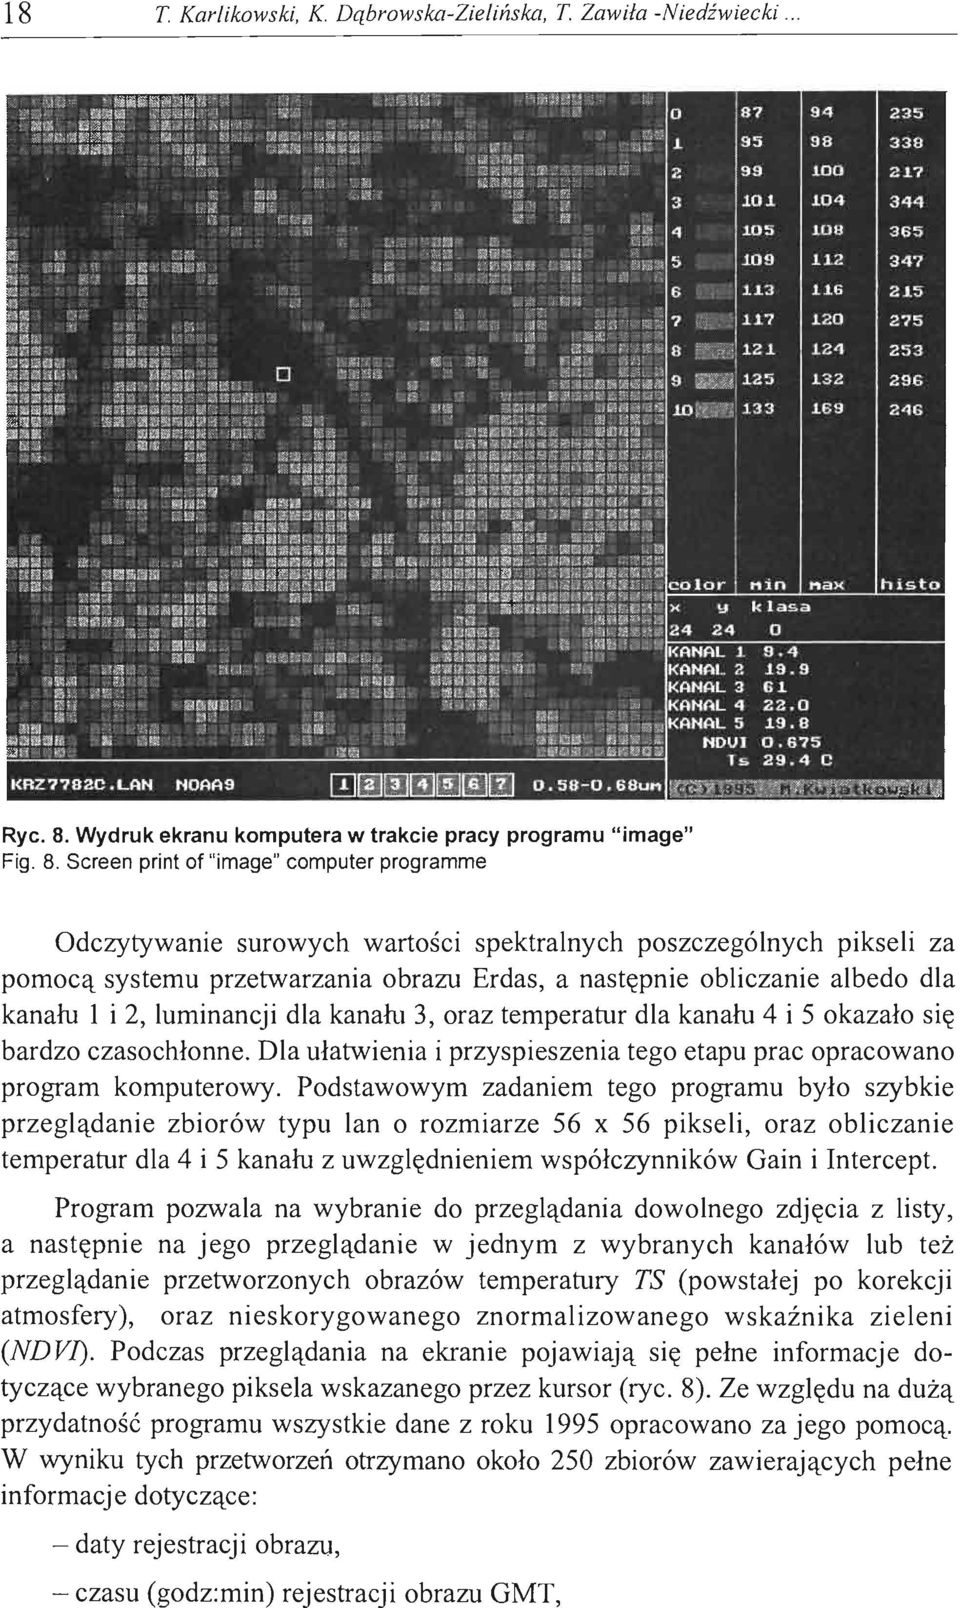 Screen print of "image" computer programme Odczytywanie surowych wartości spektralnych poszczególnych pikseli za pomocą systemu przetwarzania obrazu Erdas, a następnie obliczanie albedo dla kanału l